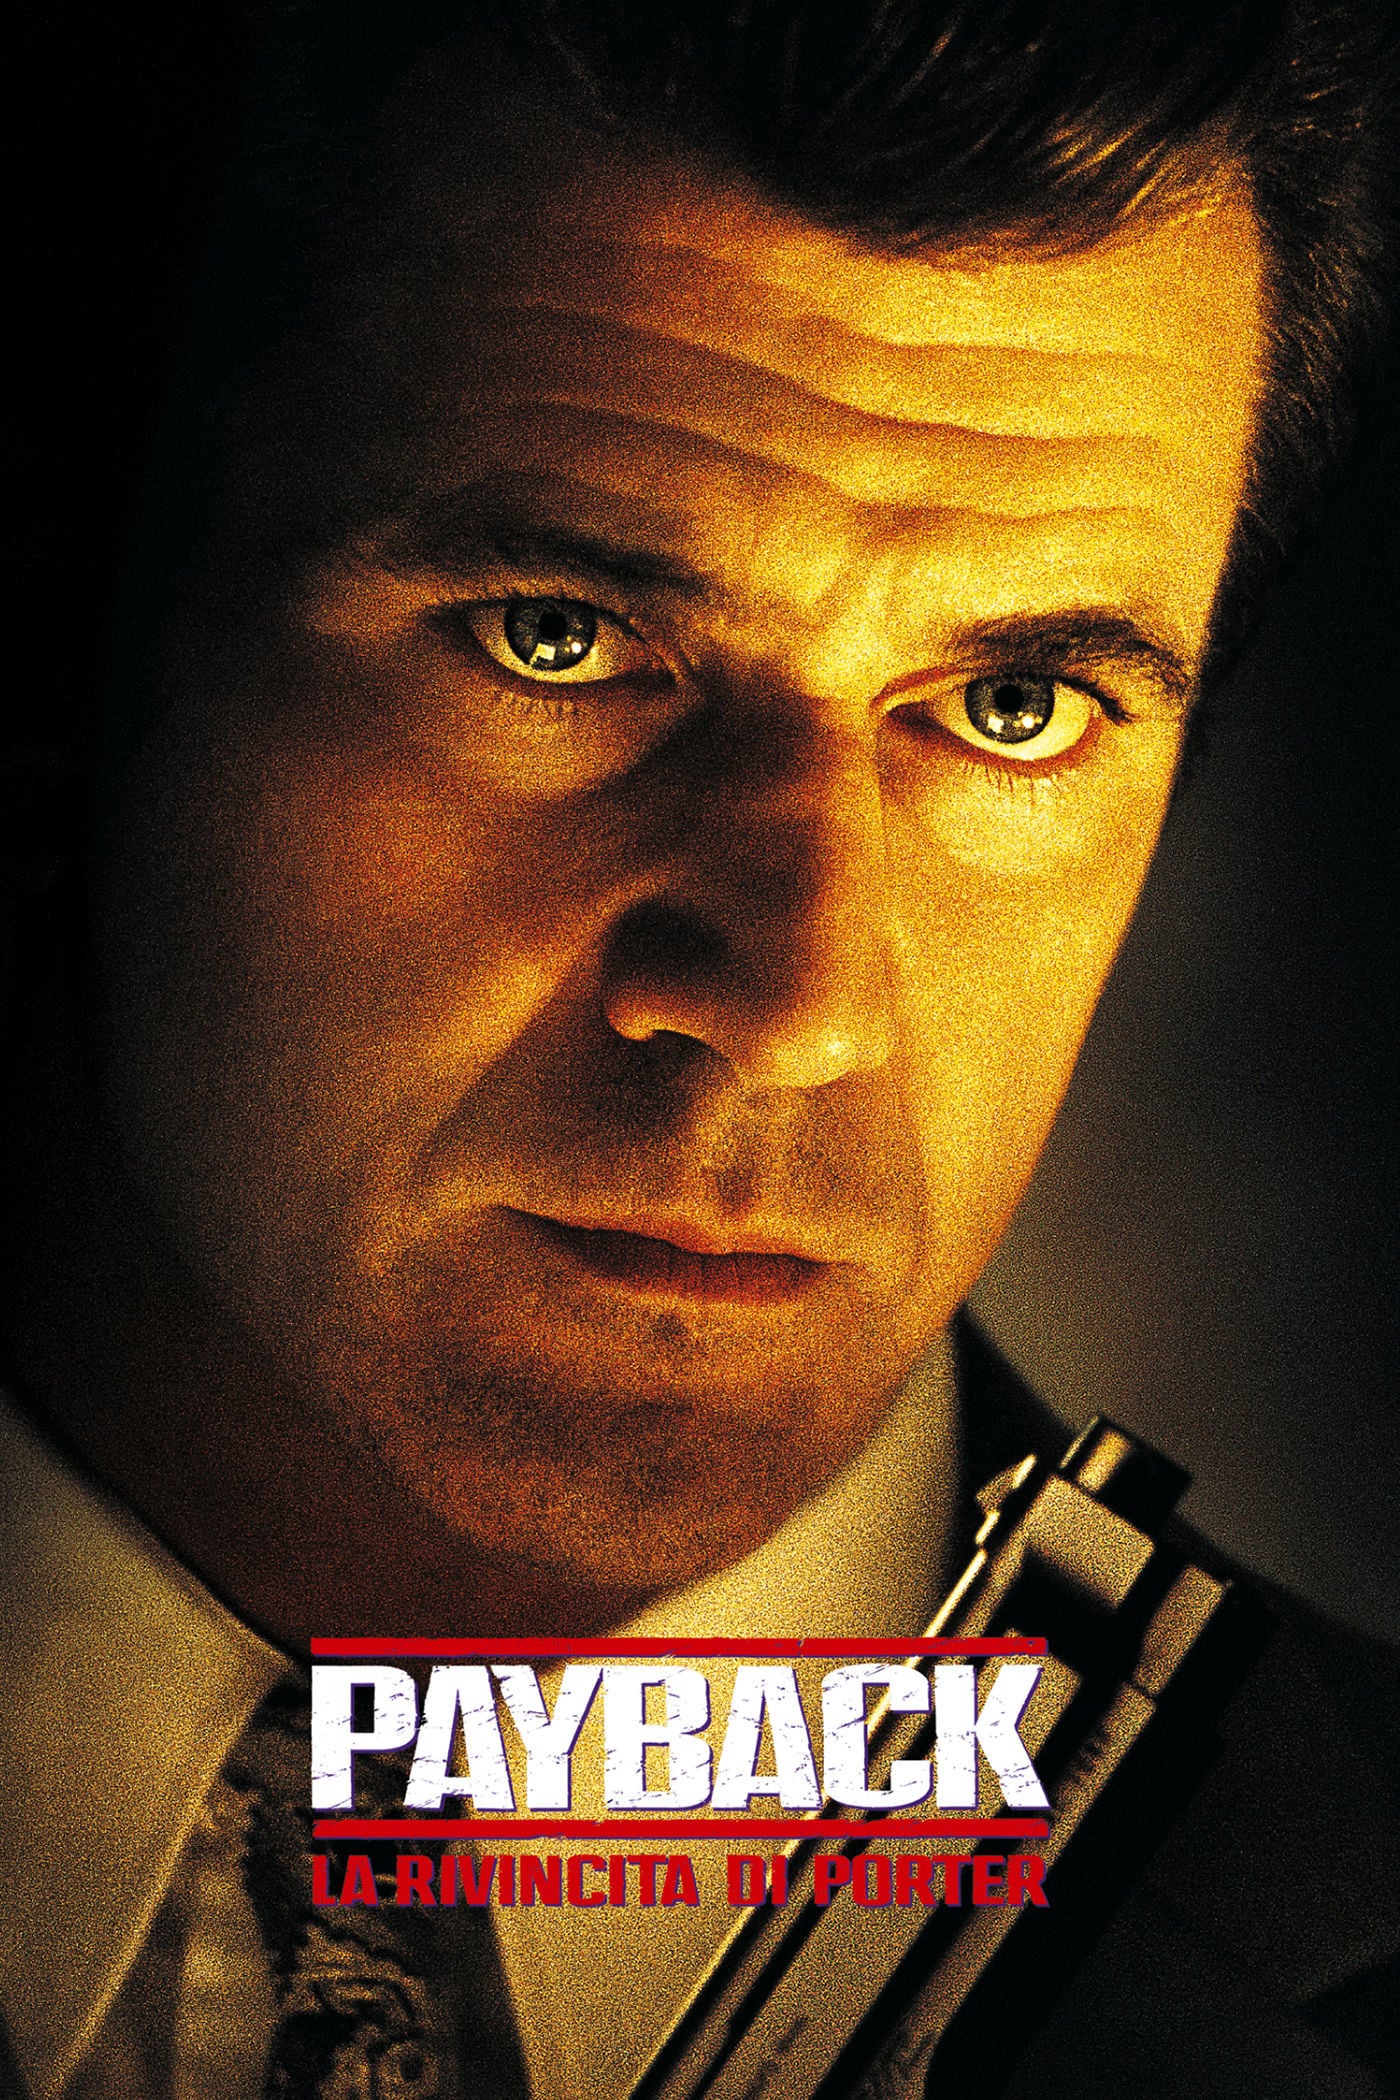 Payback – La rivincita di Porter [HD] (1998)